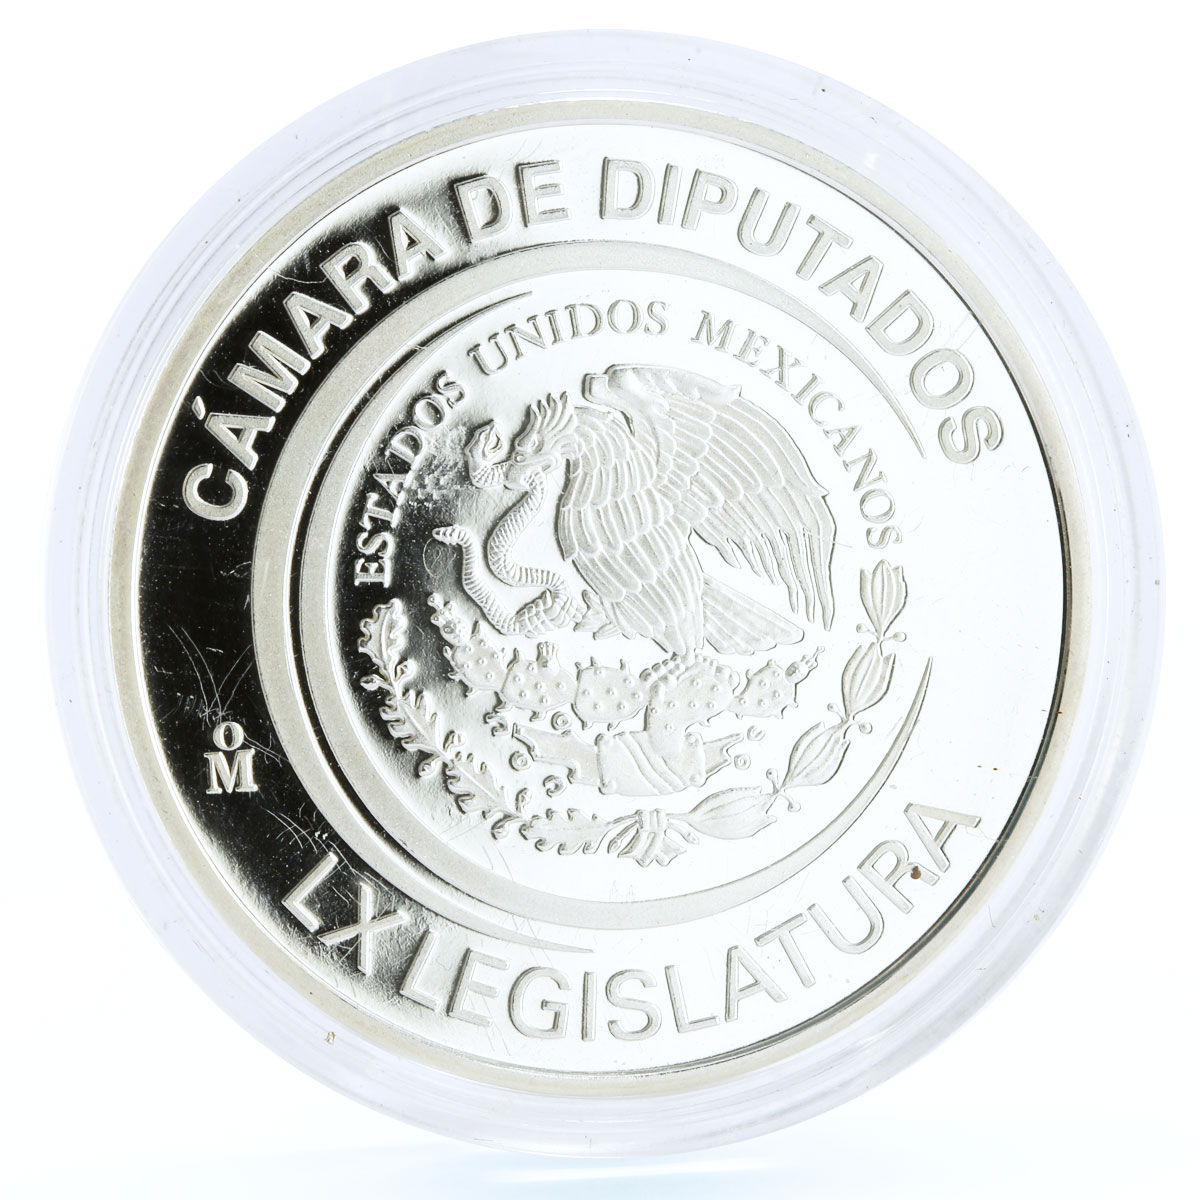 Mexico Camara de Diputados Statues Eagle Bird proof silver medal token coin 2009